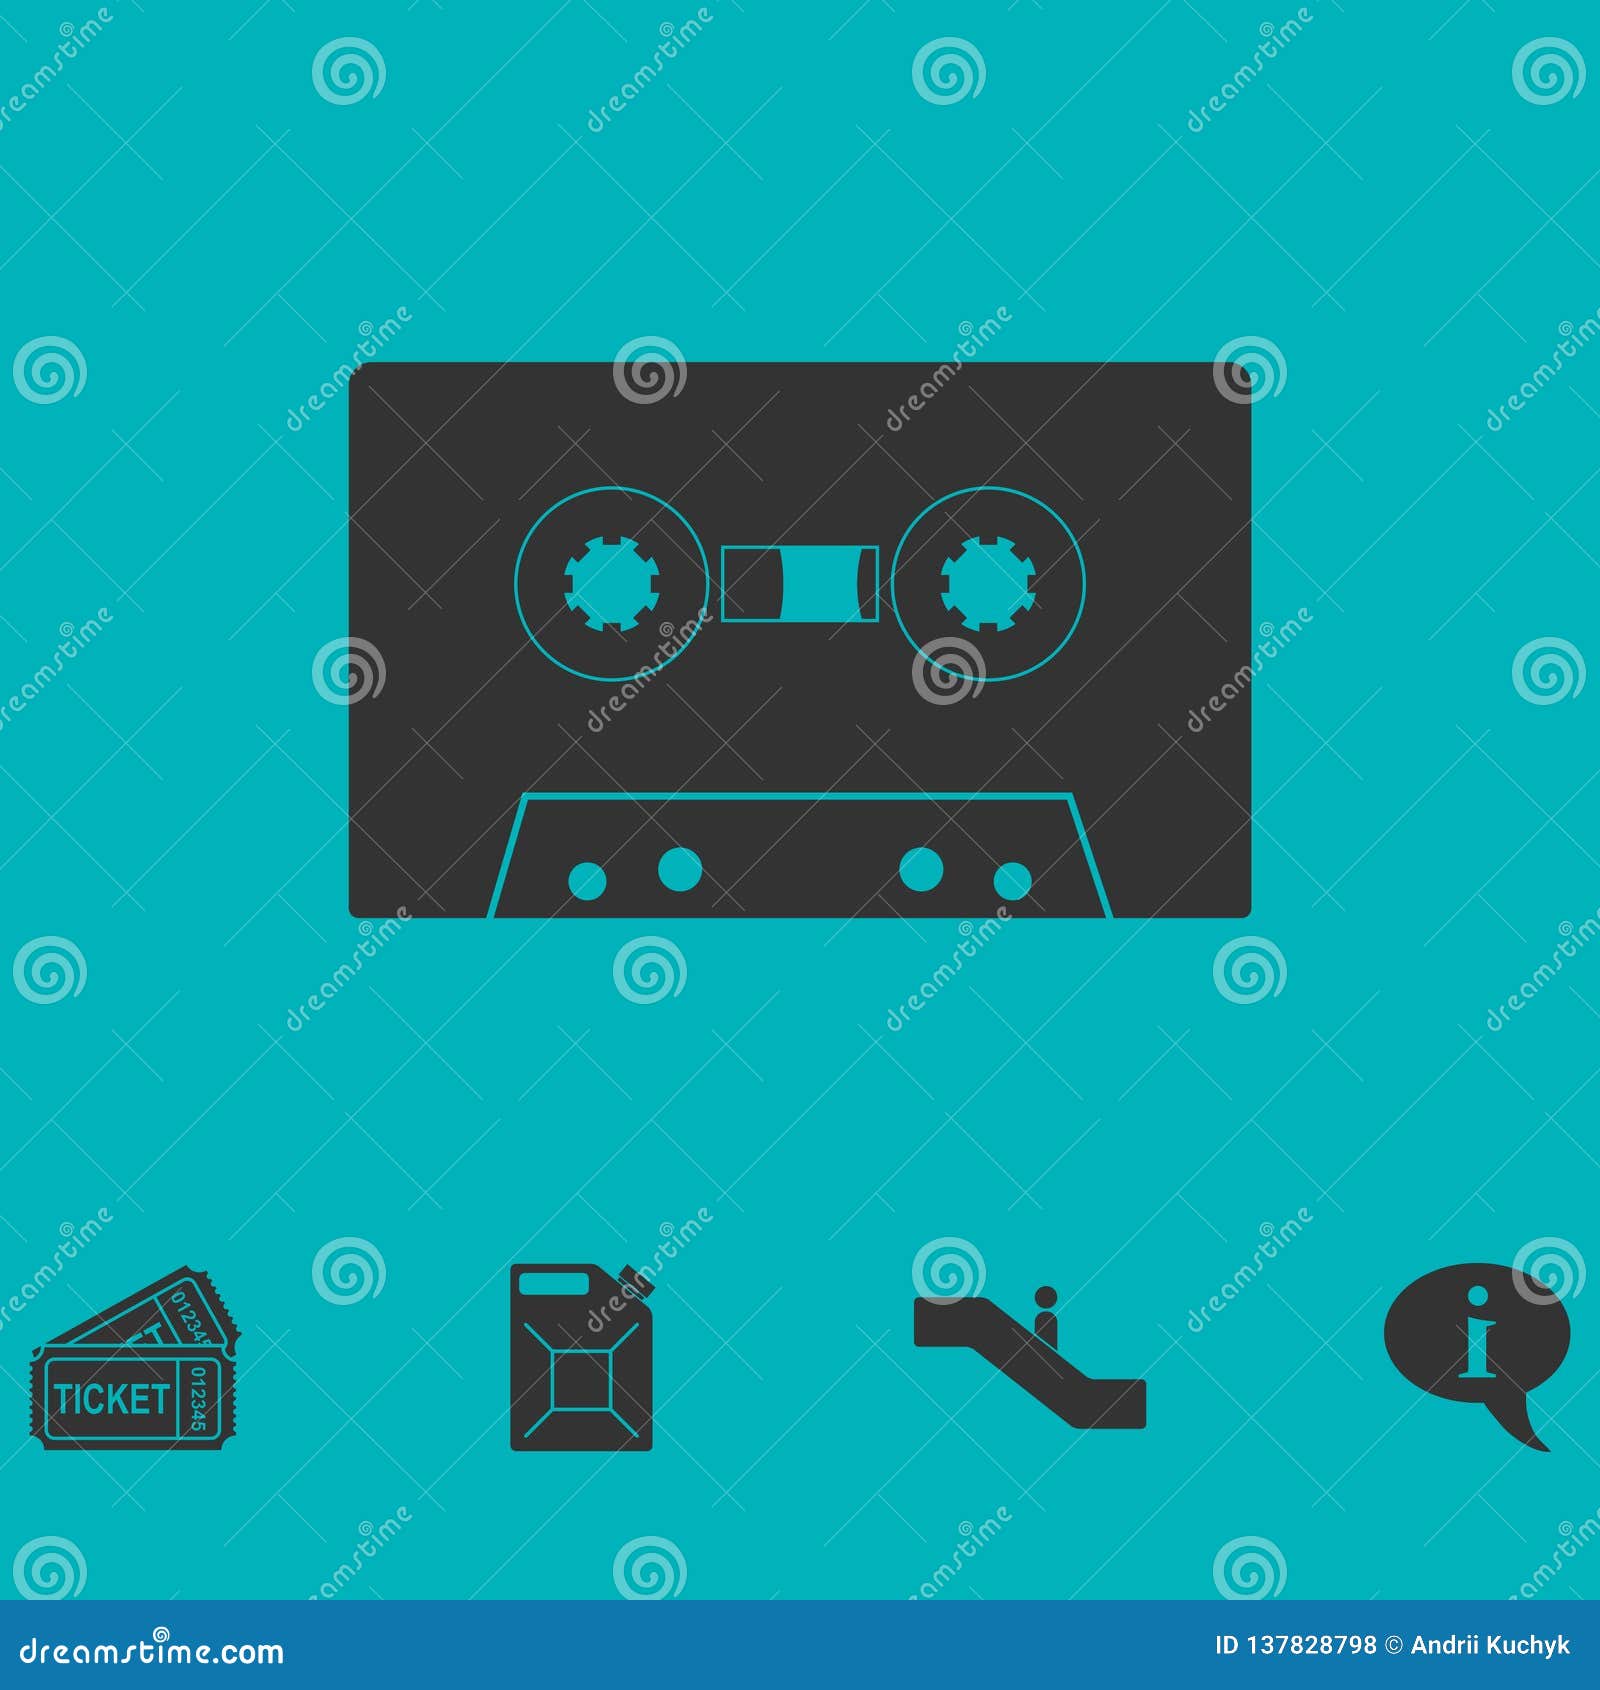 Cassette Tape Stock Illustrations – 21,434 Cassette Tape Stock  Illustrations, Vectors & Clipart - Dreamstime